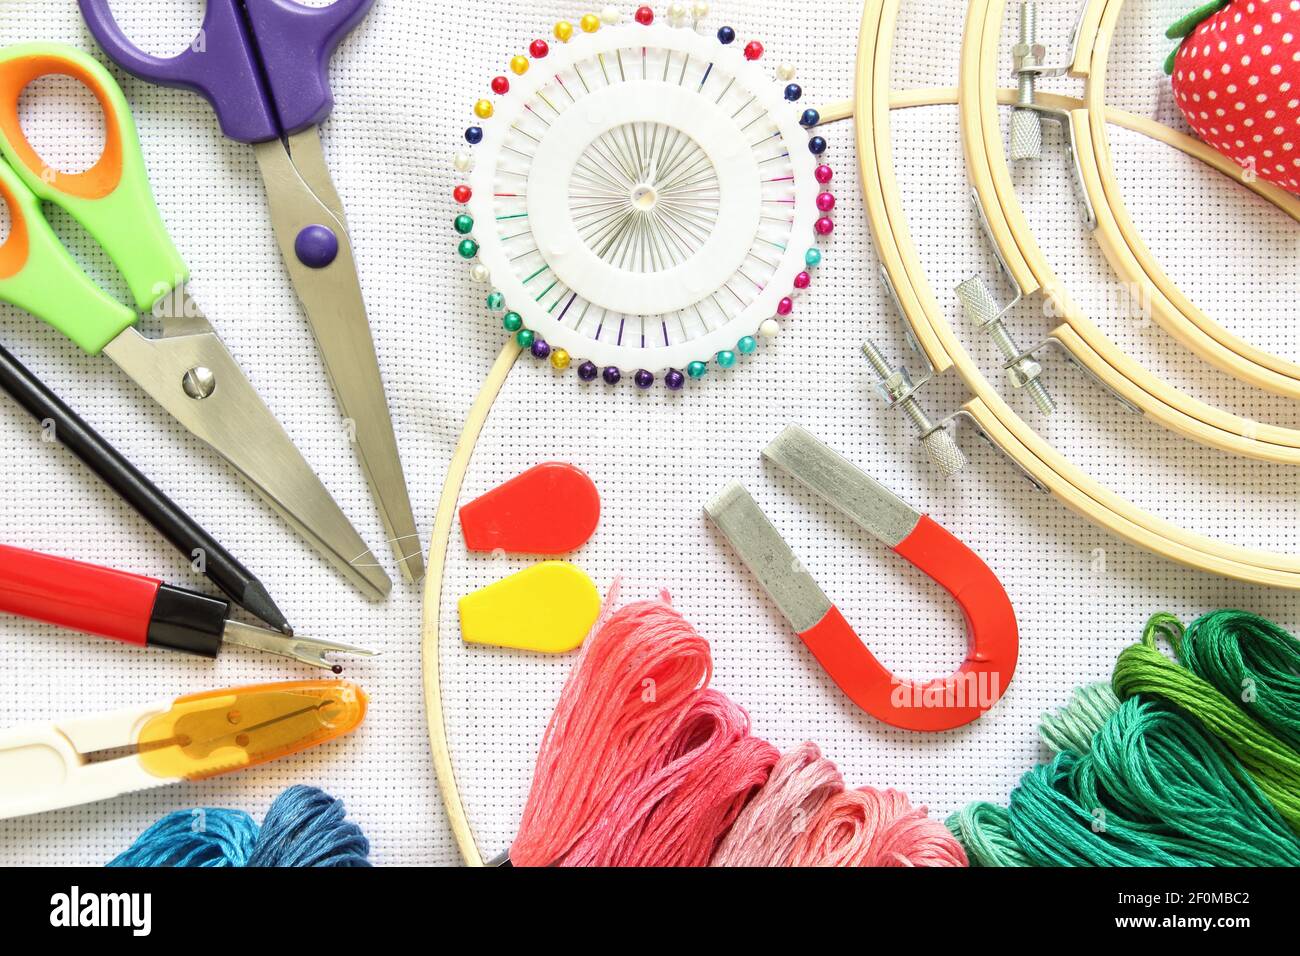 cerchio da ricamo con accessorio per cucire, forbici, fili da ricamo e ago su tela bianca Foto Stock